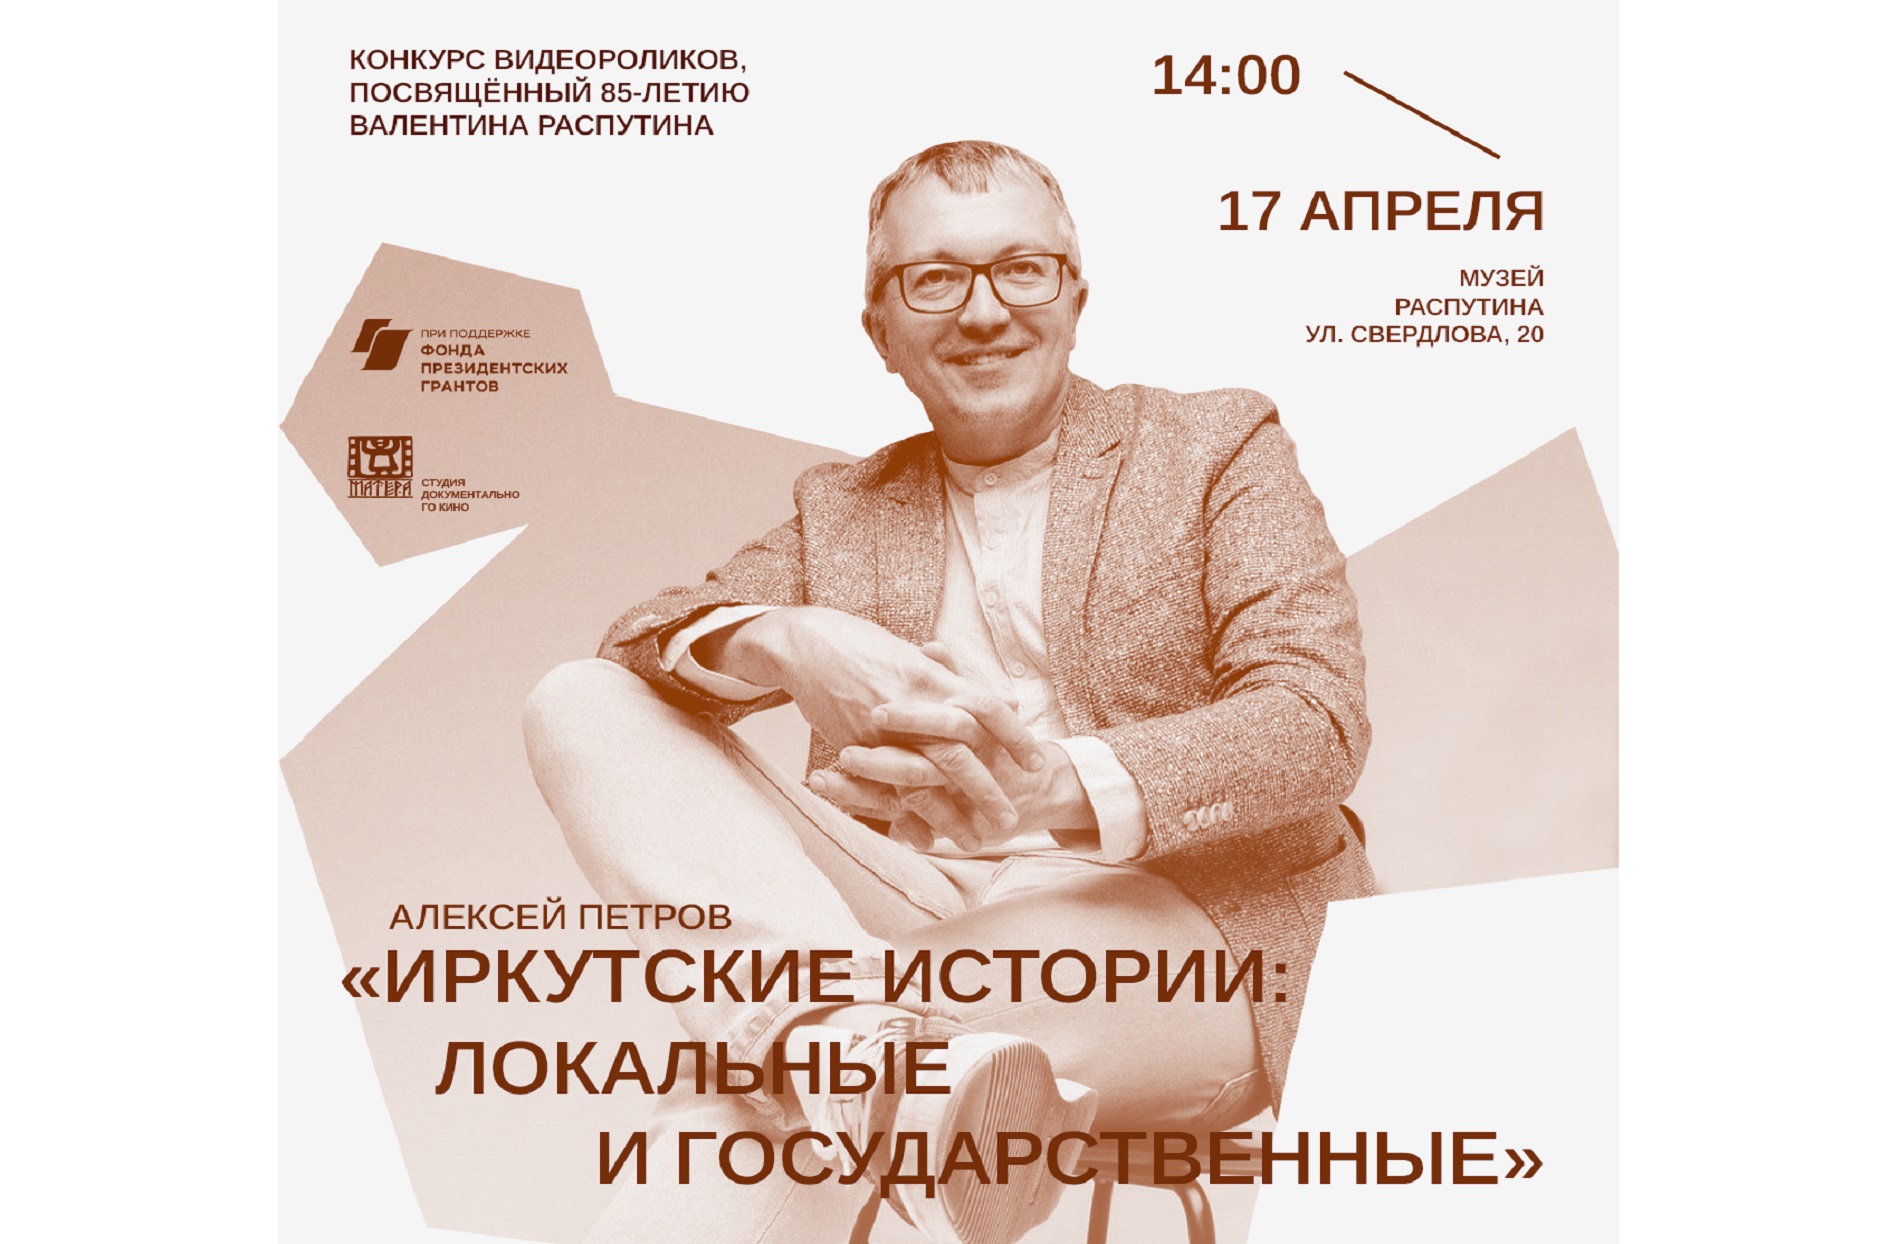 «Иркутские истории: локальные и государственные» - лекция в Музее В.Г. Распутина